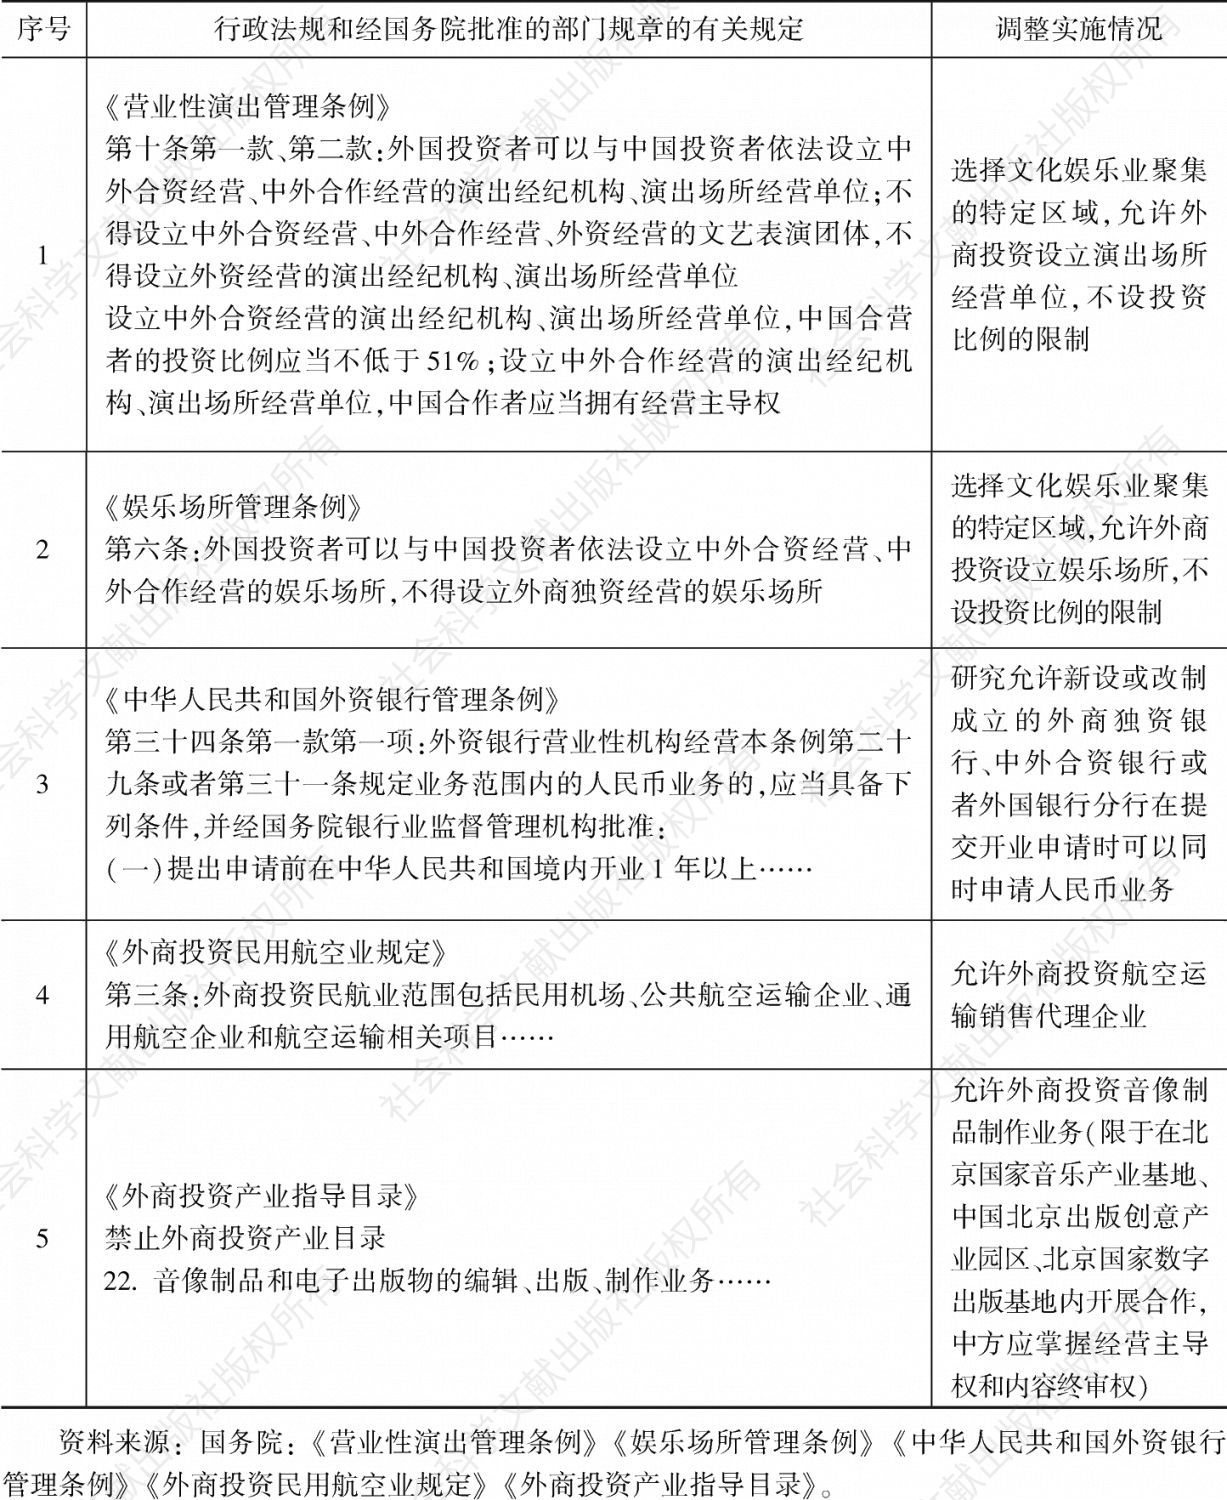 表1 国务院决定在北京市暂时调整有关行政法规和经国务院批准的部门规章规定的行政审批和准入特别管理措施目录